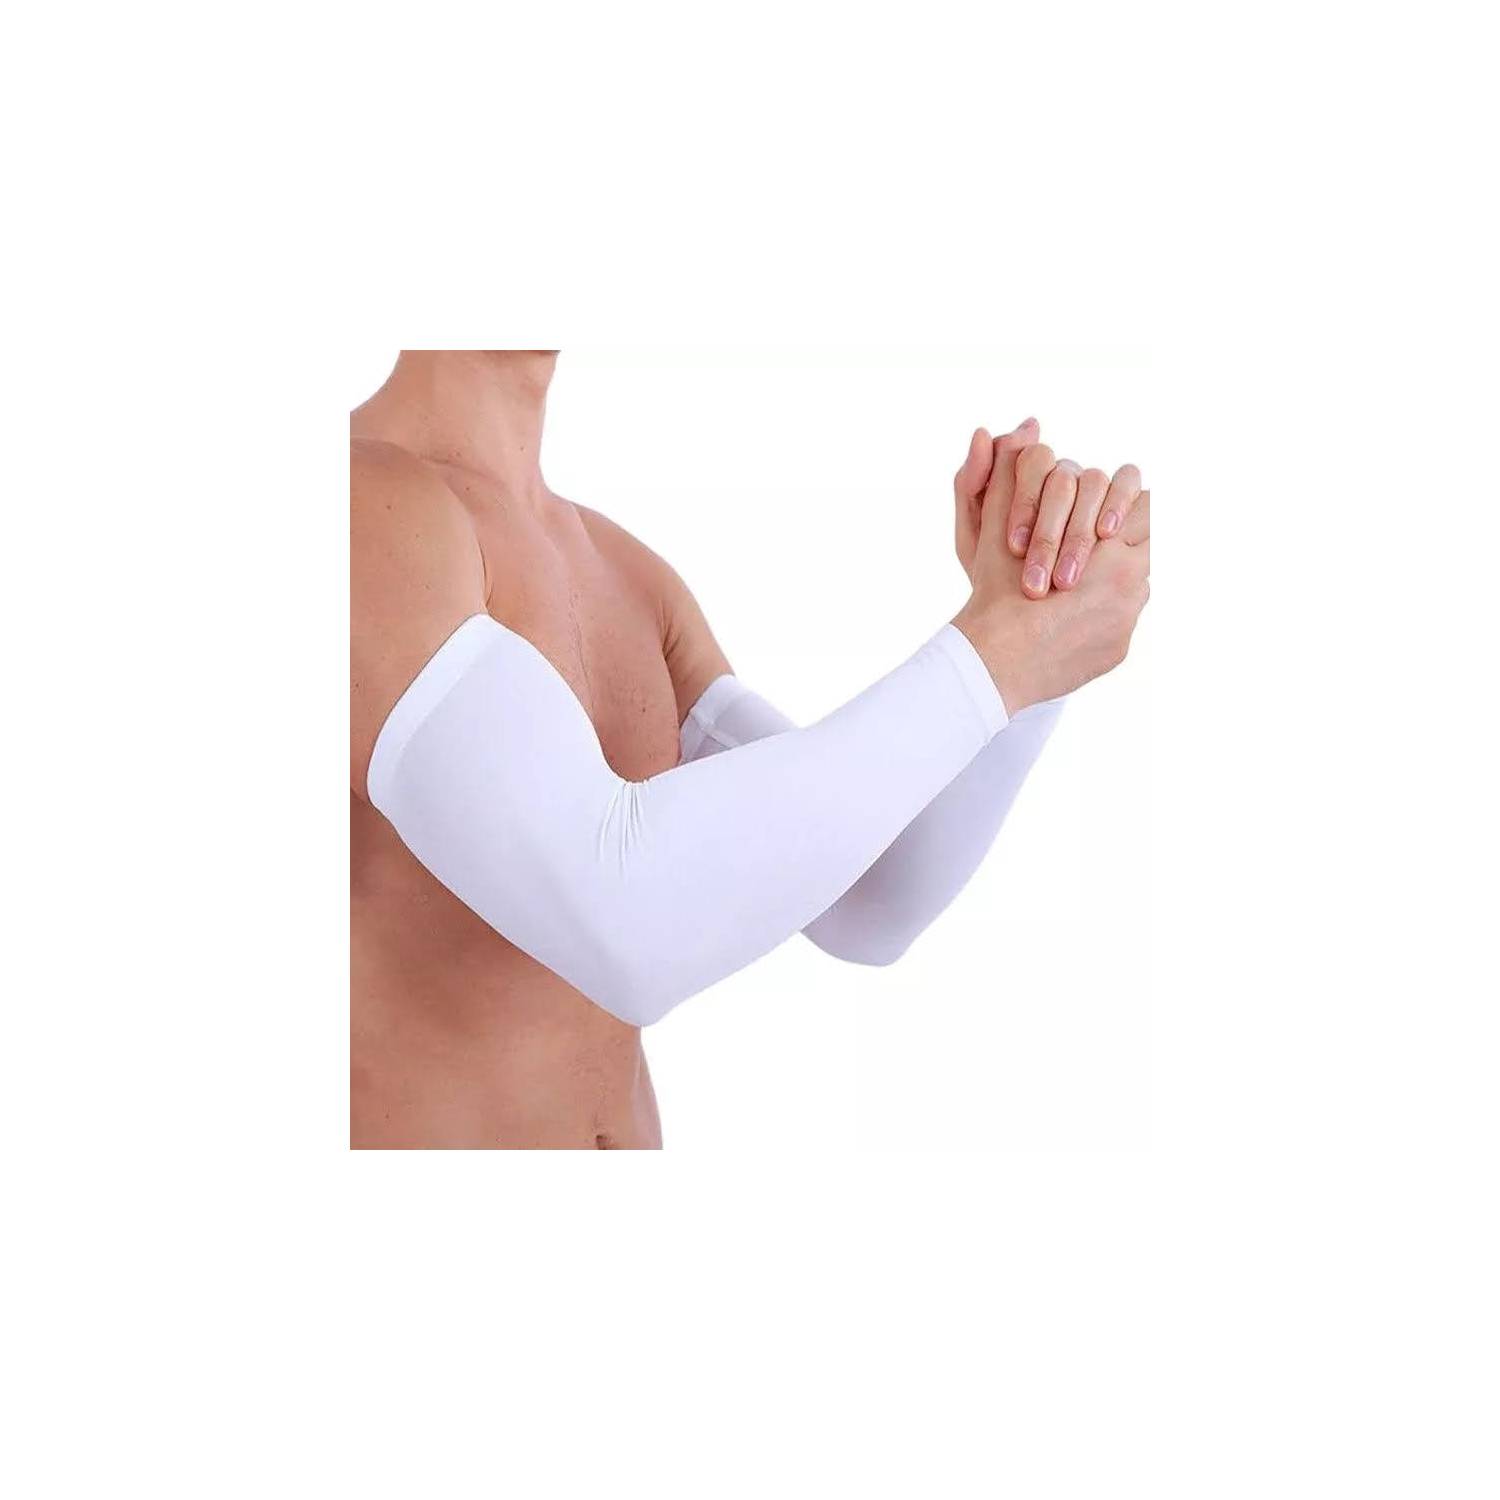 GENERICO mangas deportivas para brazos con protección UV negro